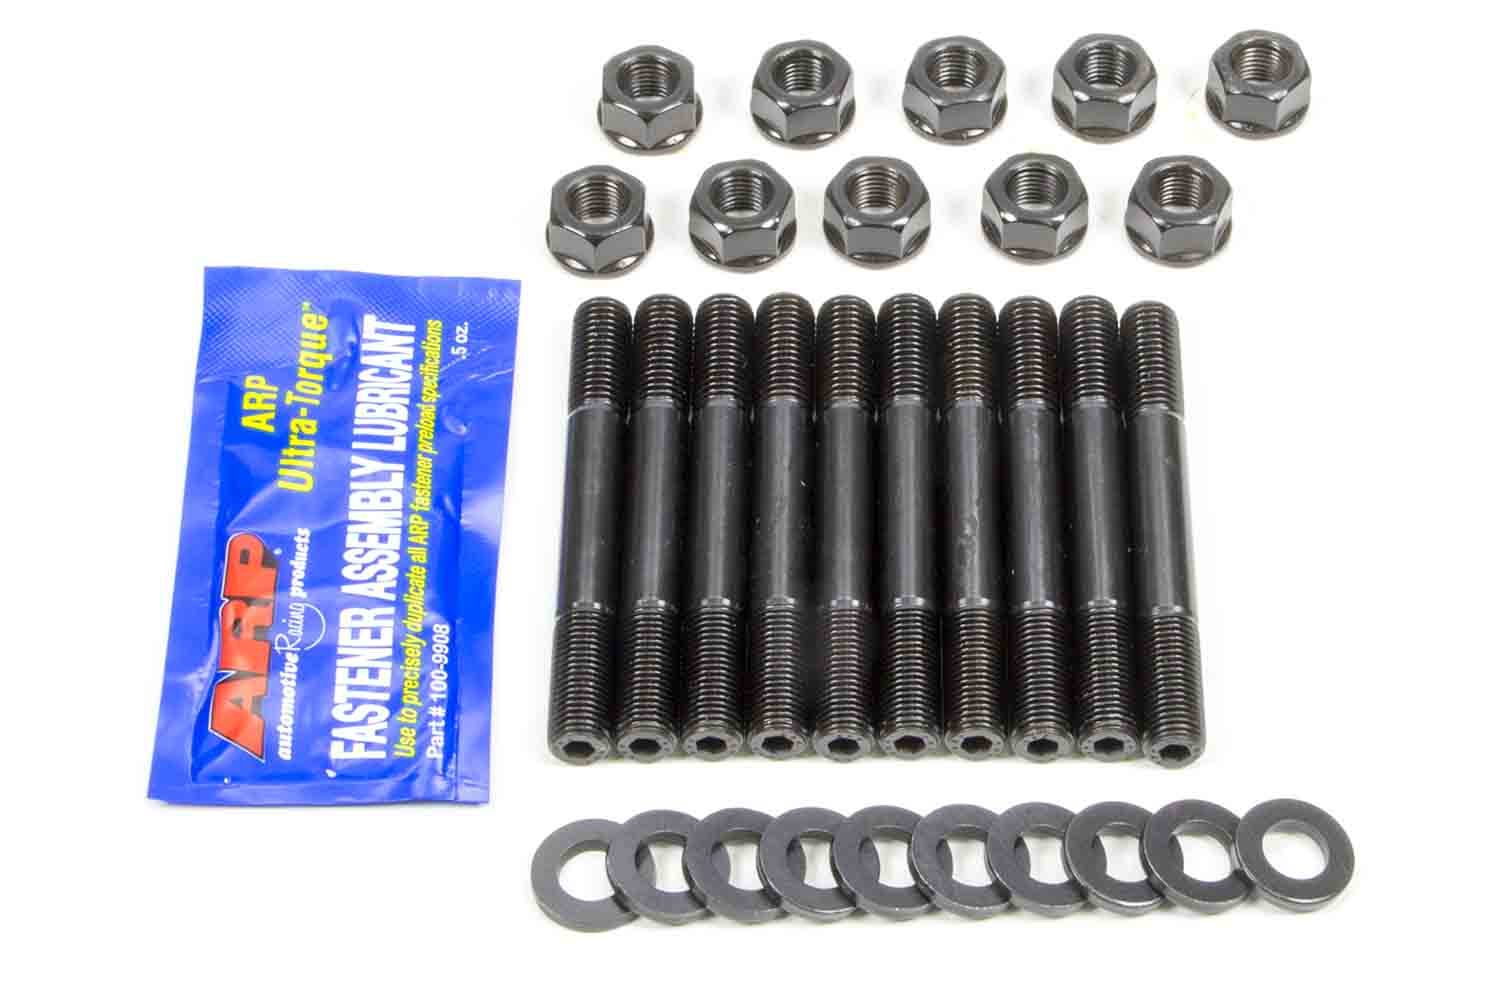 ARP 281-5401 Main Stud Kit, Hex Nuts, 2-Bolt Mains, Chromoly, Black Oxide, Oldsmobile 4-Cylinder, Kit